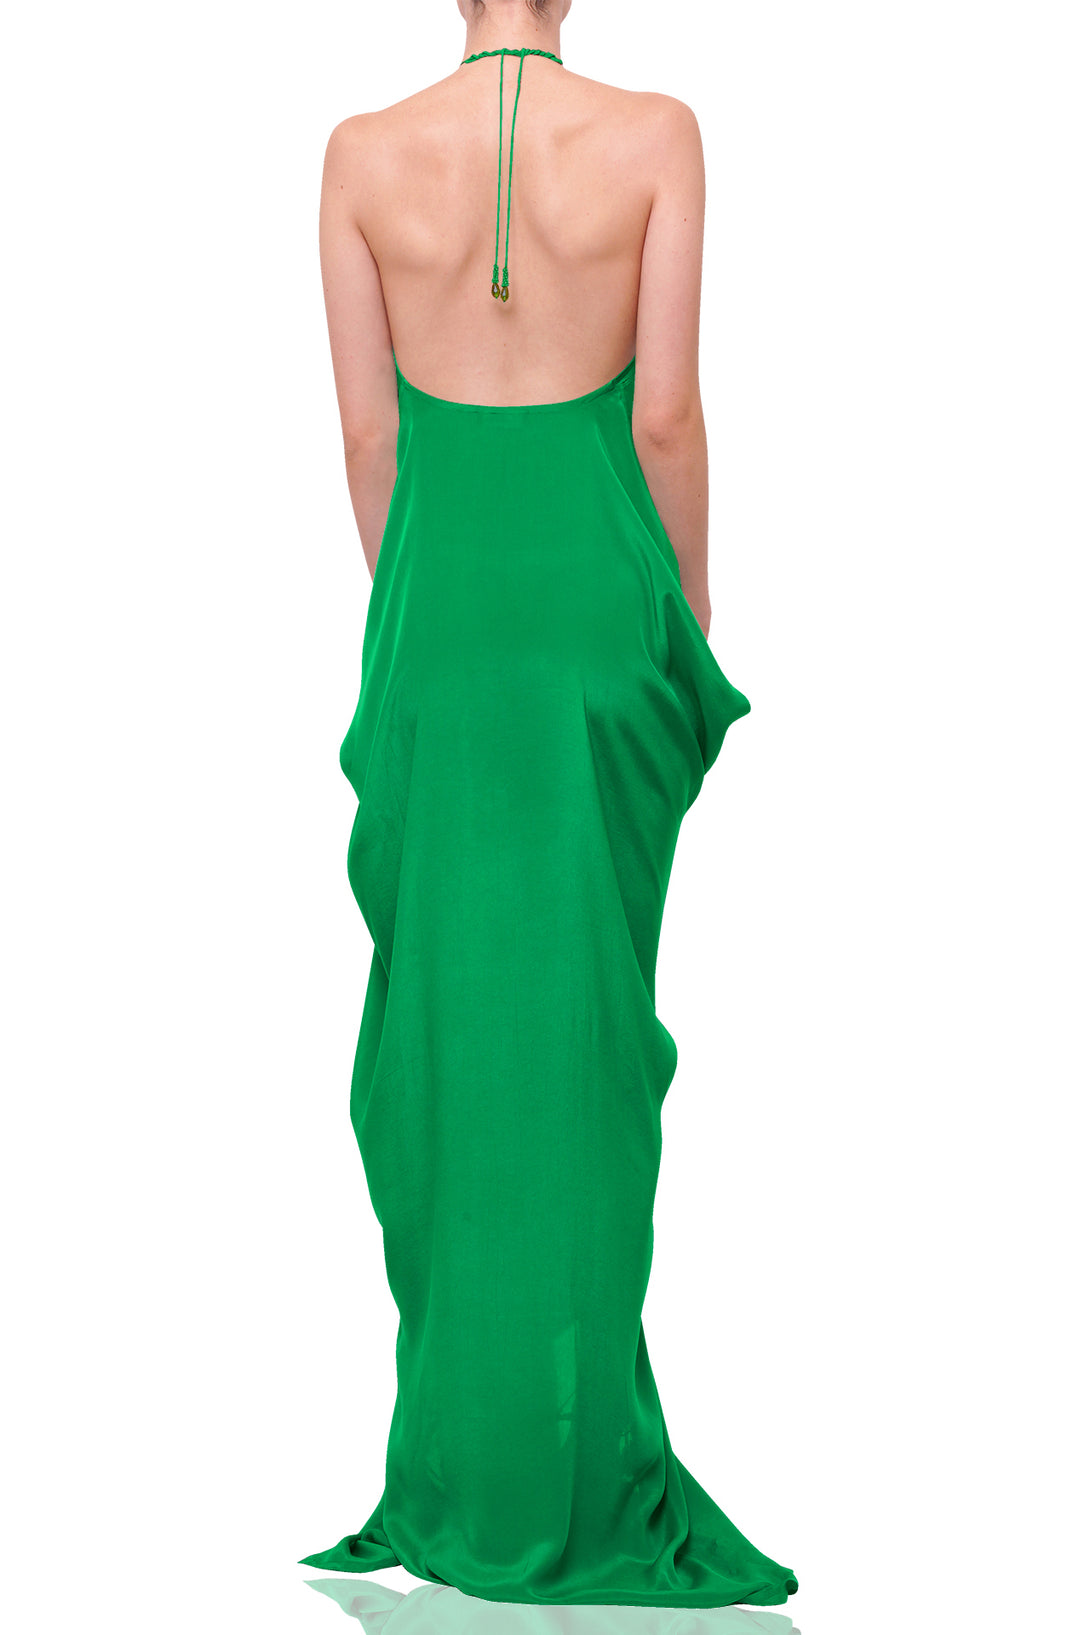 Green Kaftan | Designer Green Kaftan & Green Kaftan Dress - Shahida Parides